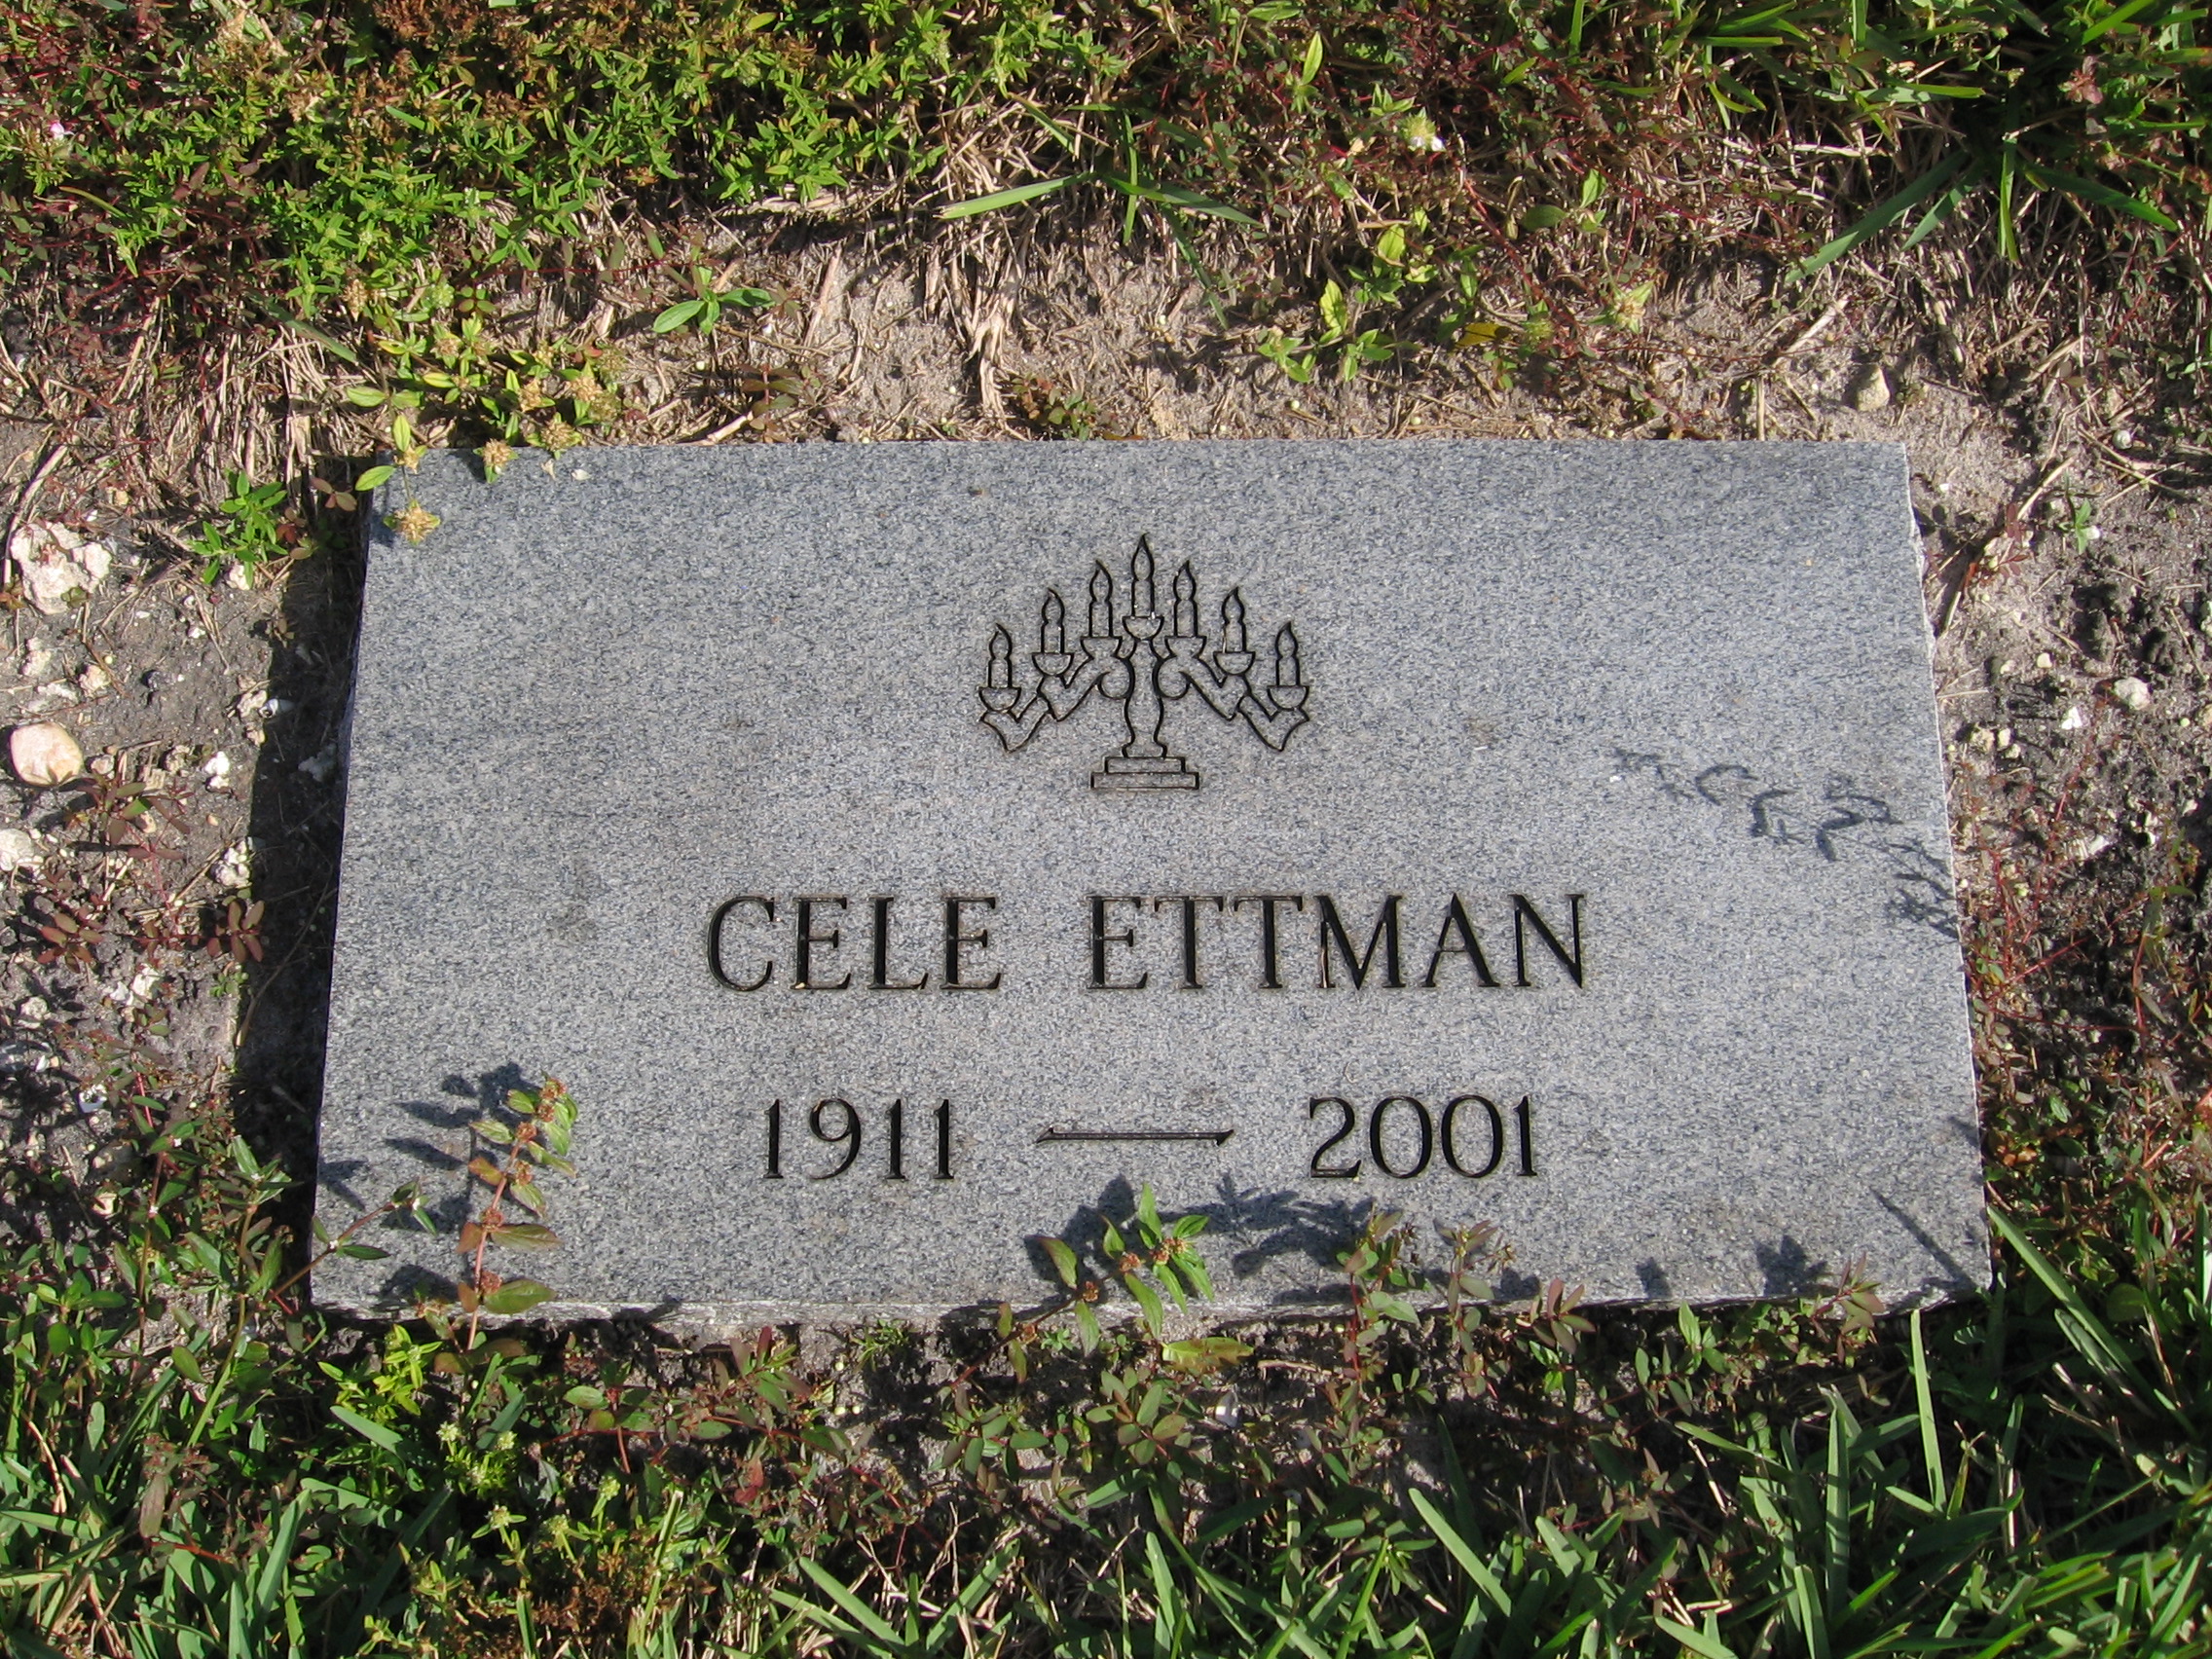 Cele Ettman